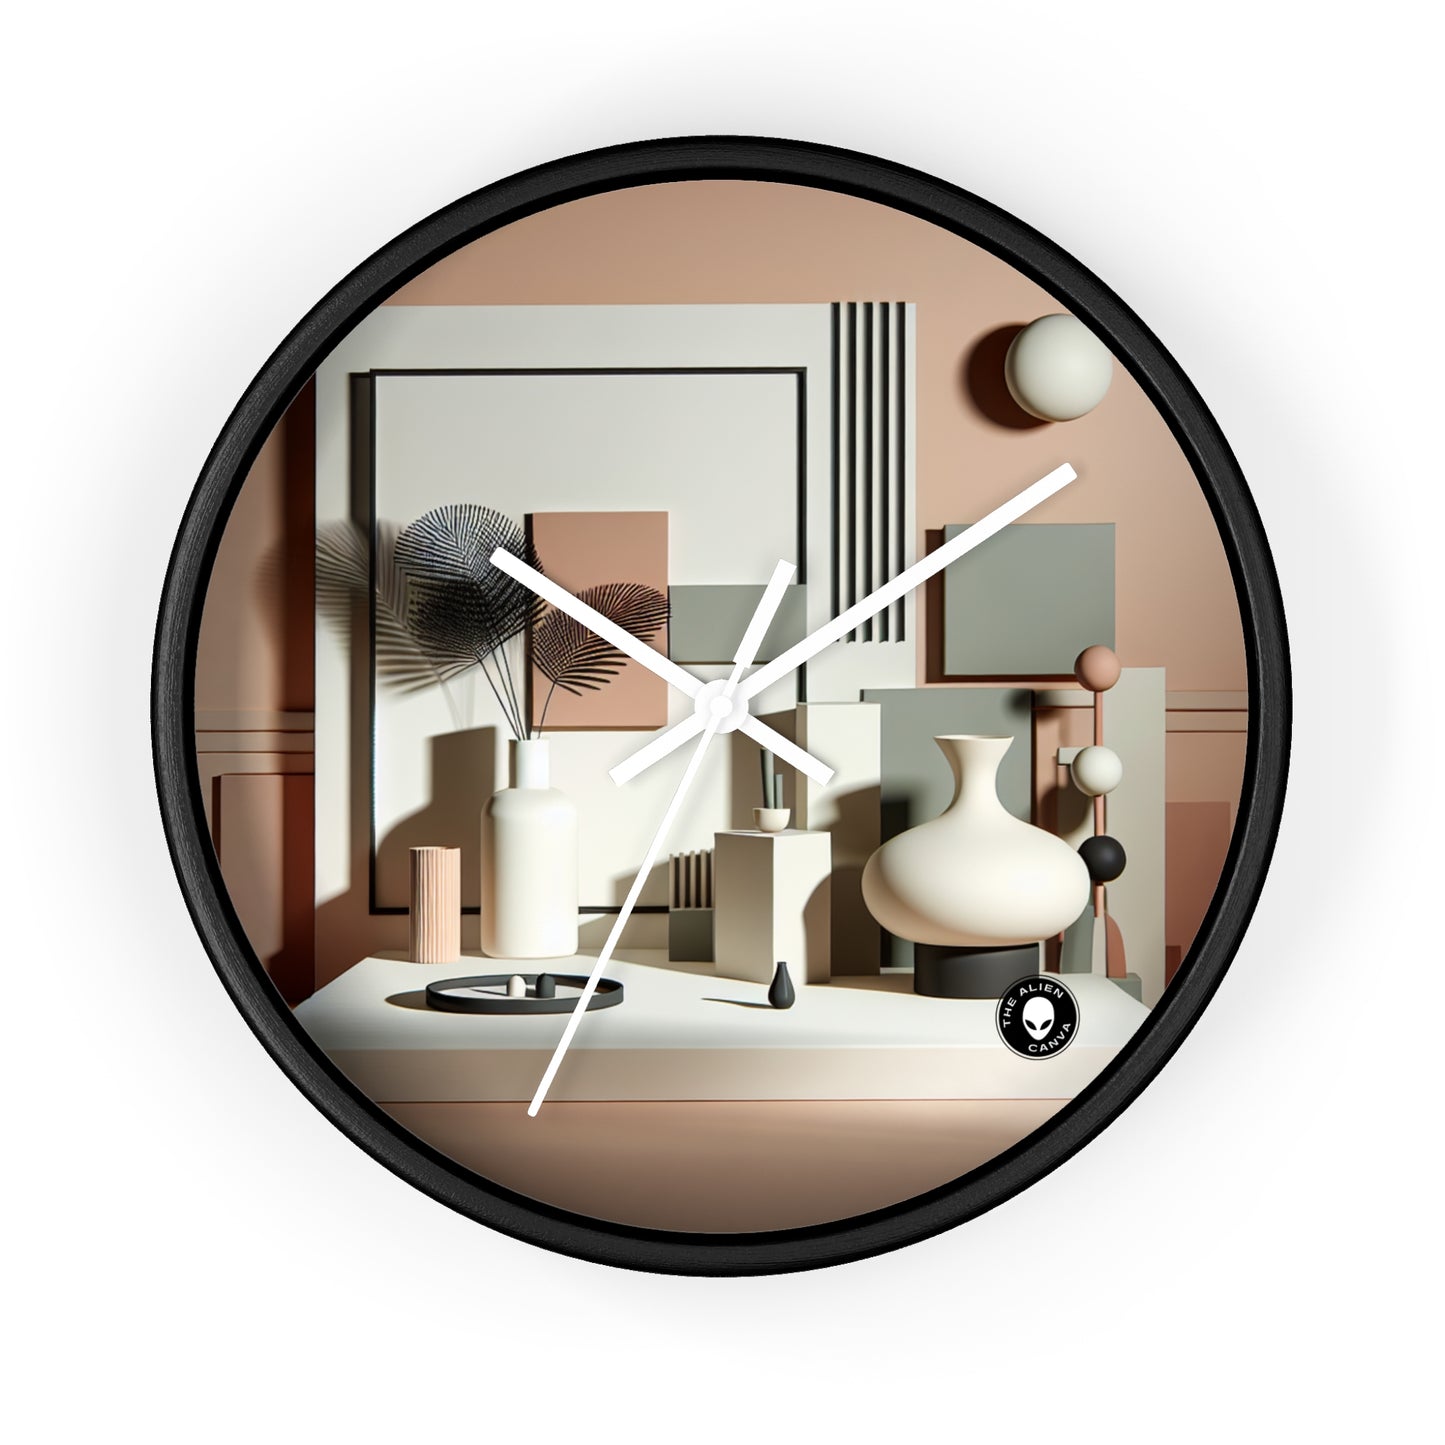 "Armonía en la geometría: una exploración minimalista del arte digital" - El reloj de pared alienígena posminimalismo